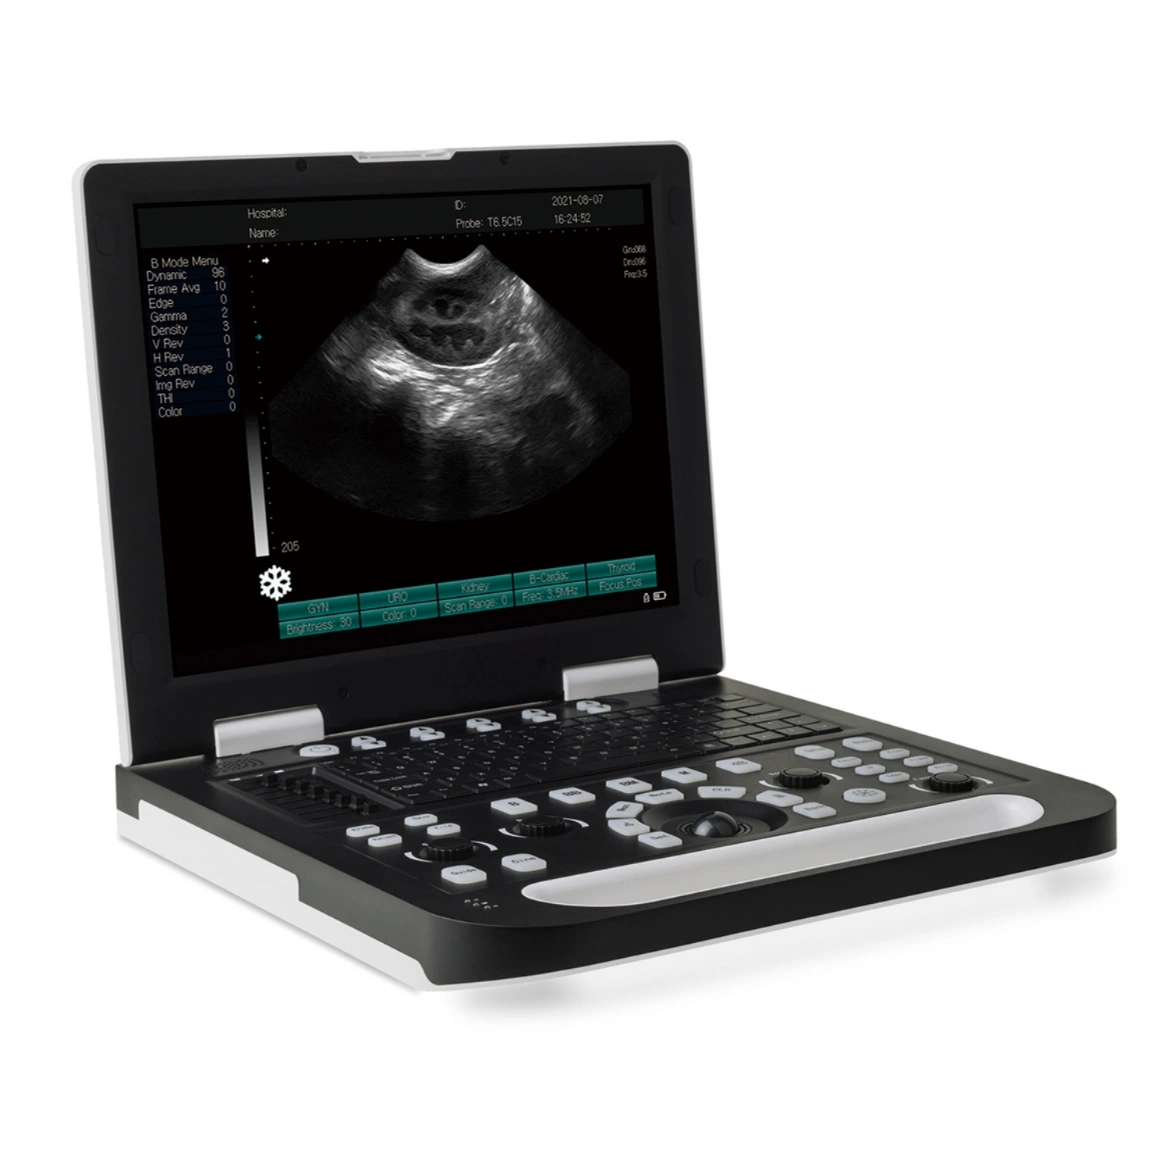 معدات التشخيص الطبي في المستشفى جهاز الماسح الضوئي بالأشعة فوق الصوتية بالكمبيوتر المحمول بالأبيض والأسود مع عرض صور عالية الجودة